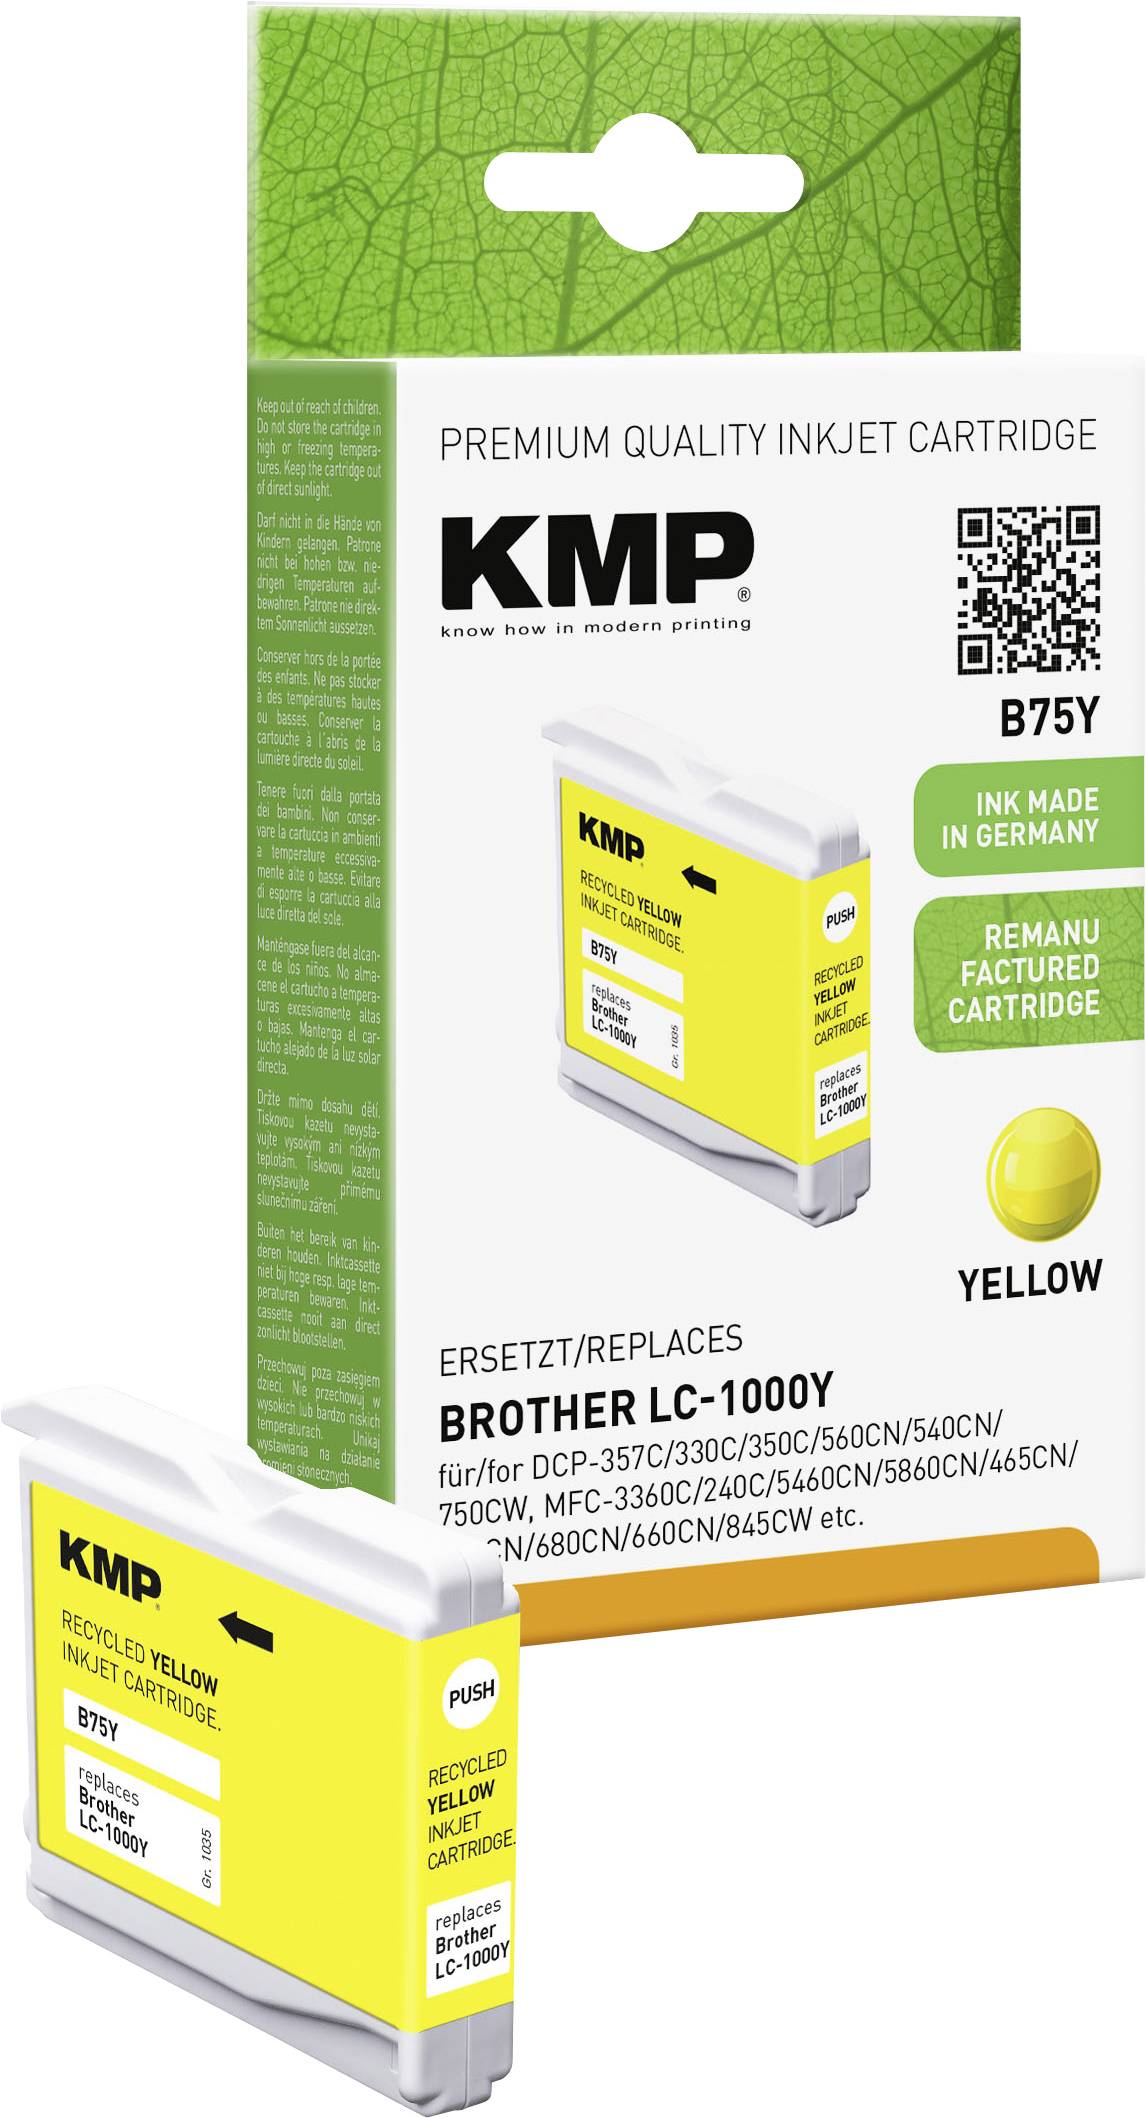 KMP Brother DCP-357C/330C/350C/560CN/540CN/750CW, MFC-3360C/240C/5460CN/5860CN/465CN/440CN/680CN/660